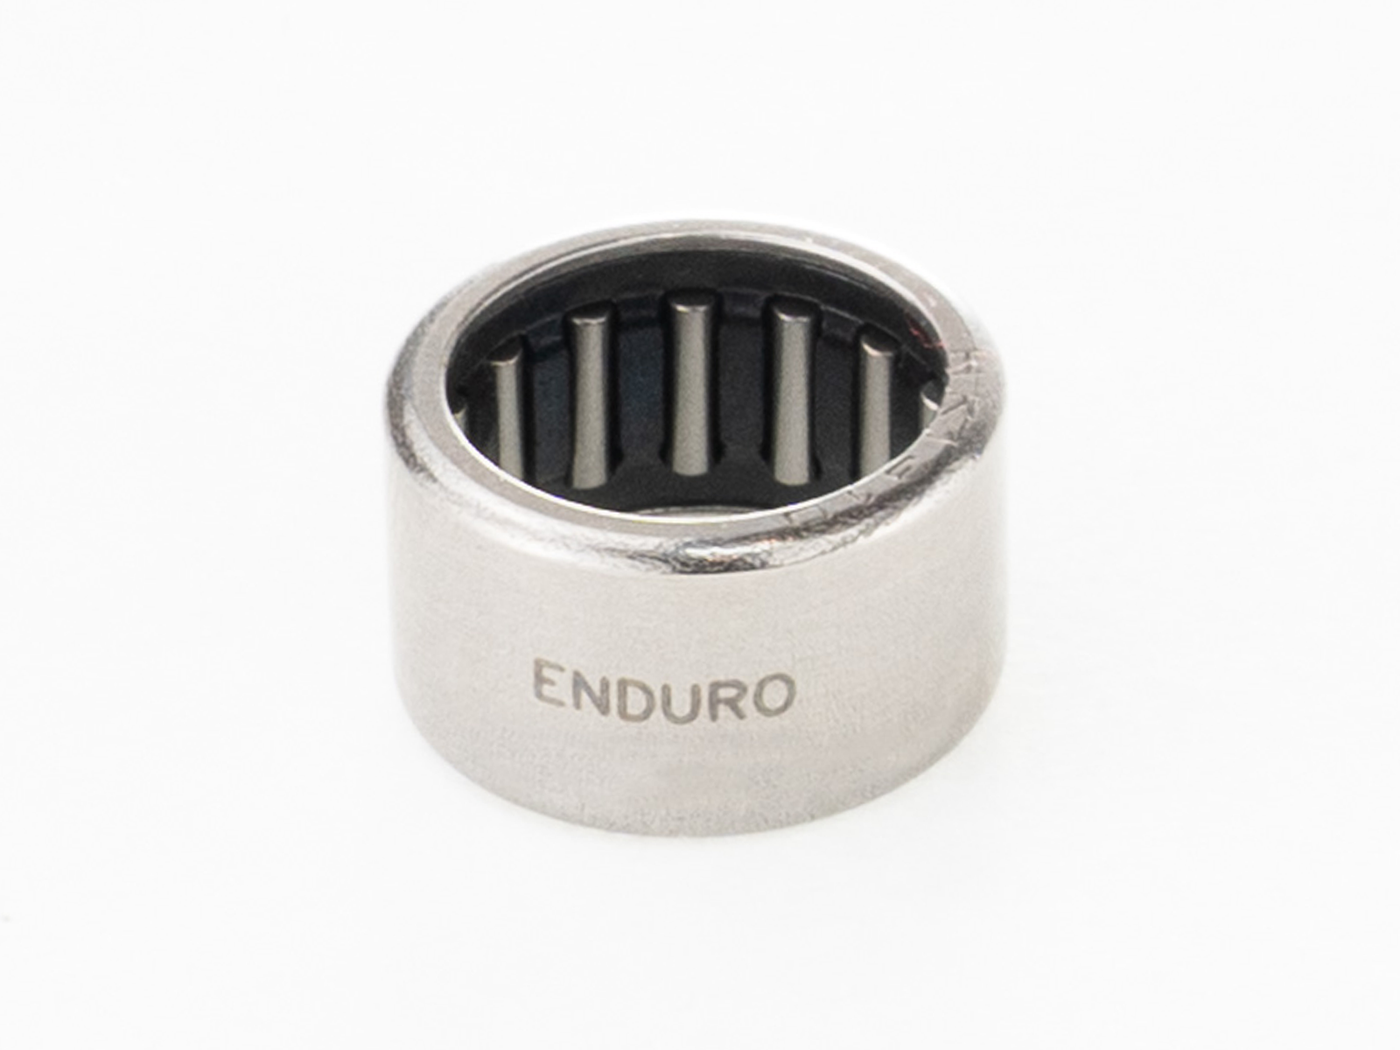 Enduro NB 13x17x10 - HK 1310 High Chromium Steel Drawn-Cup Needle Bearing - 13mm x 17mm x 10mm